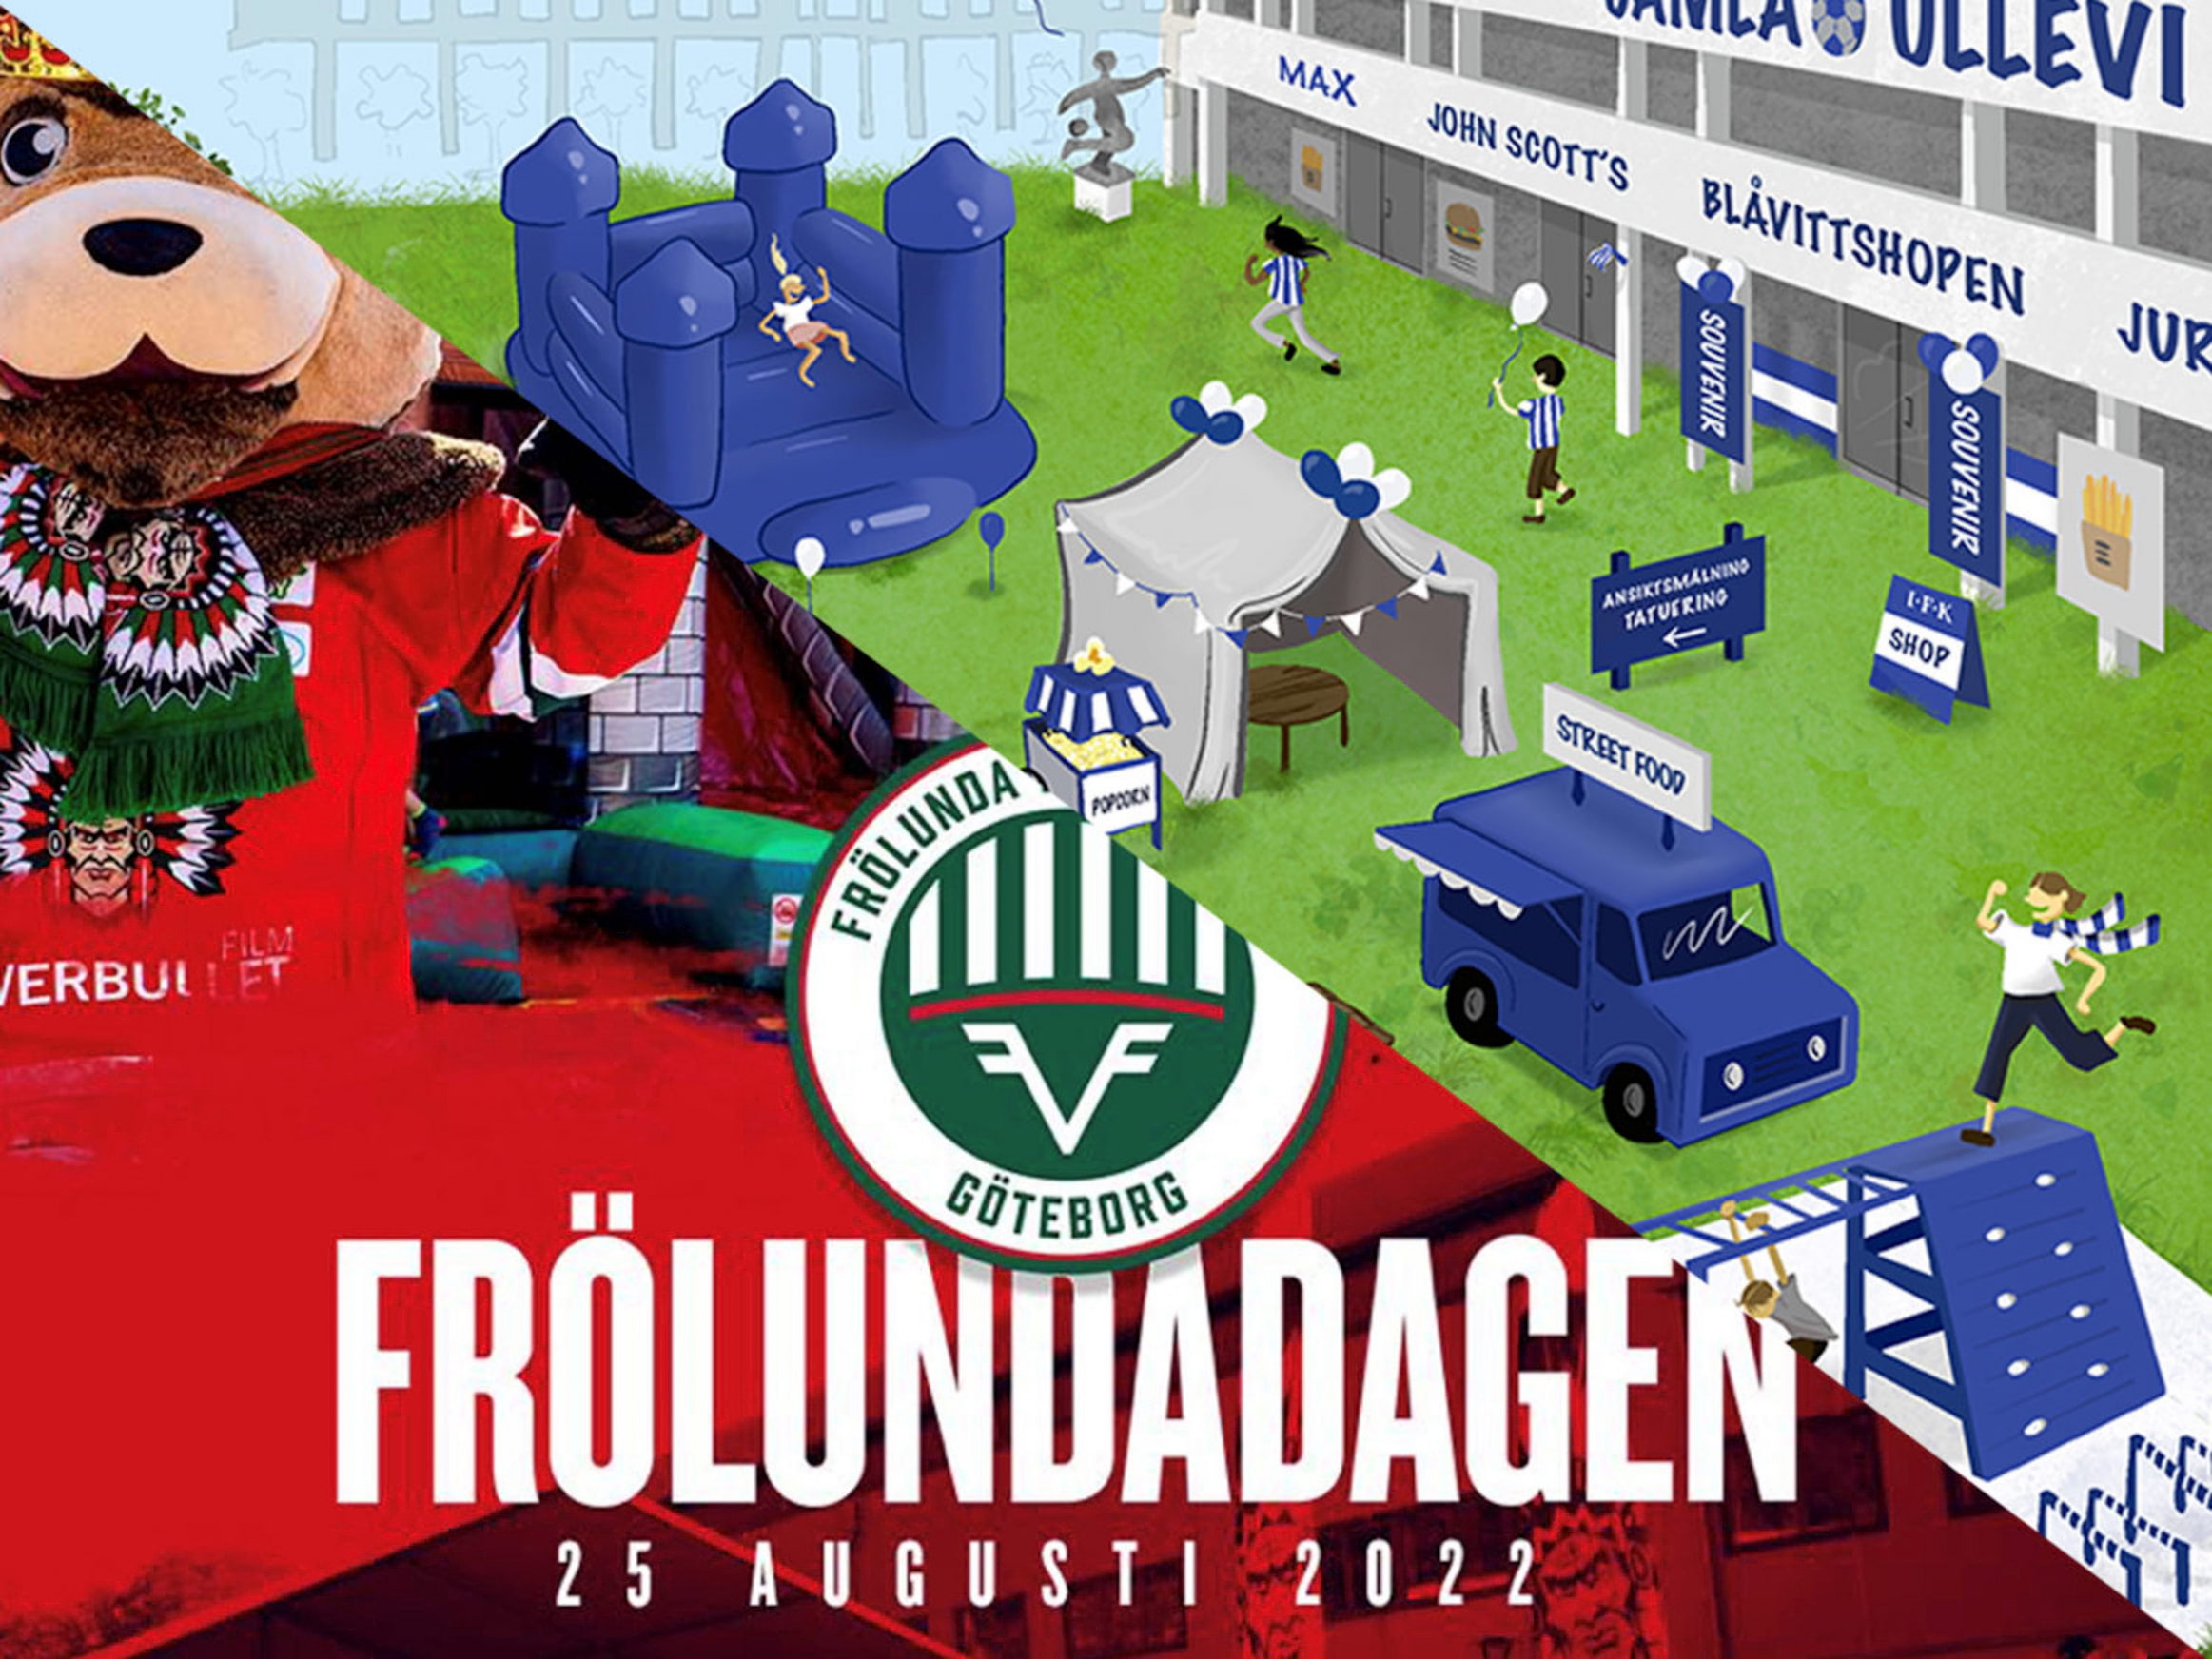 Folkfest på Frölundadagen med IFK Göteborg